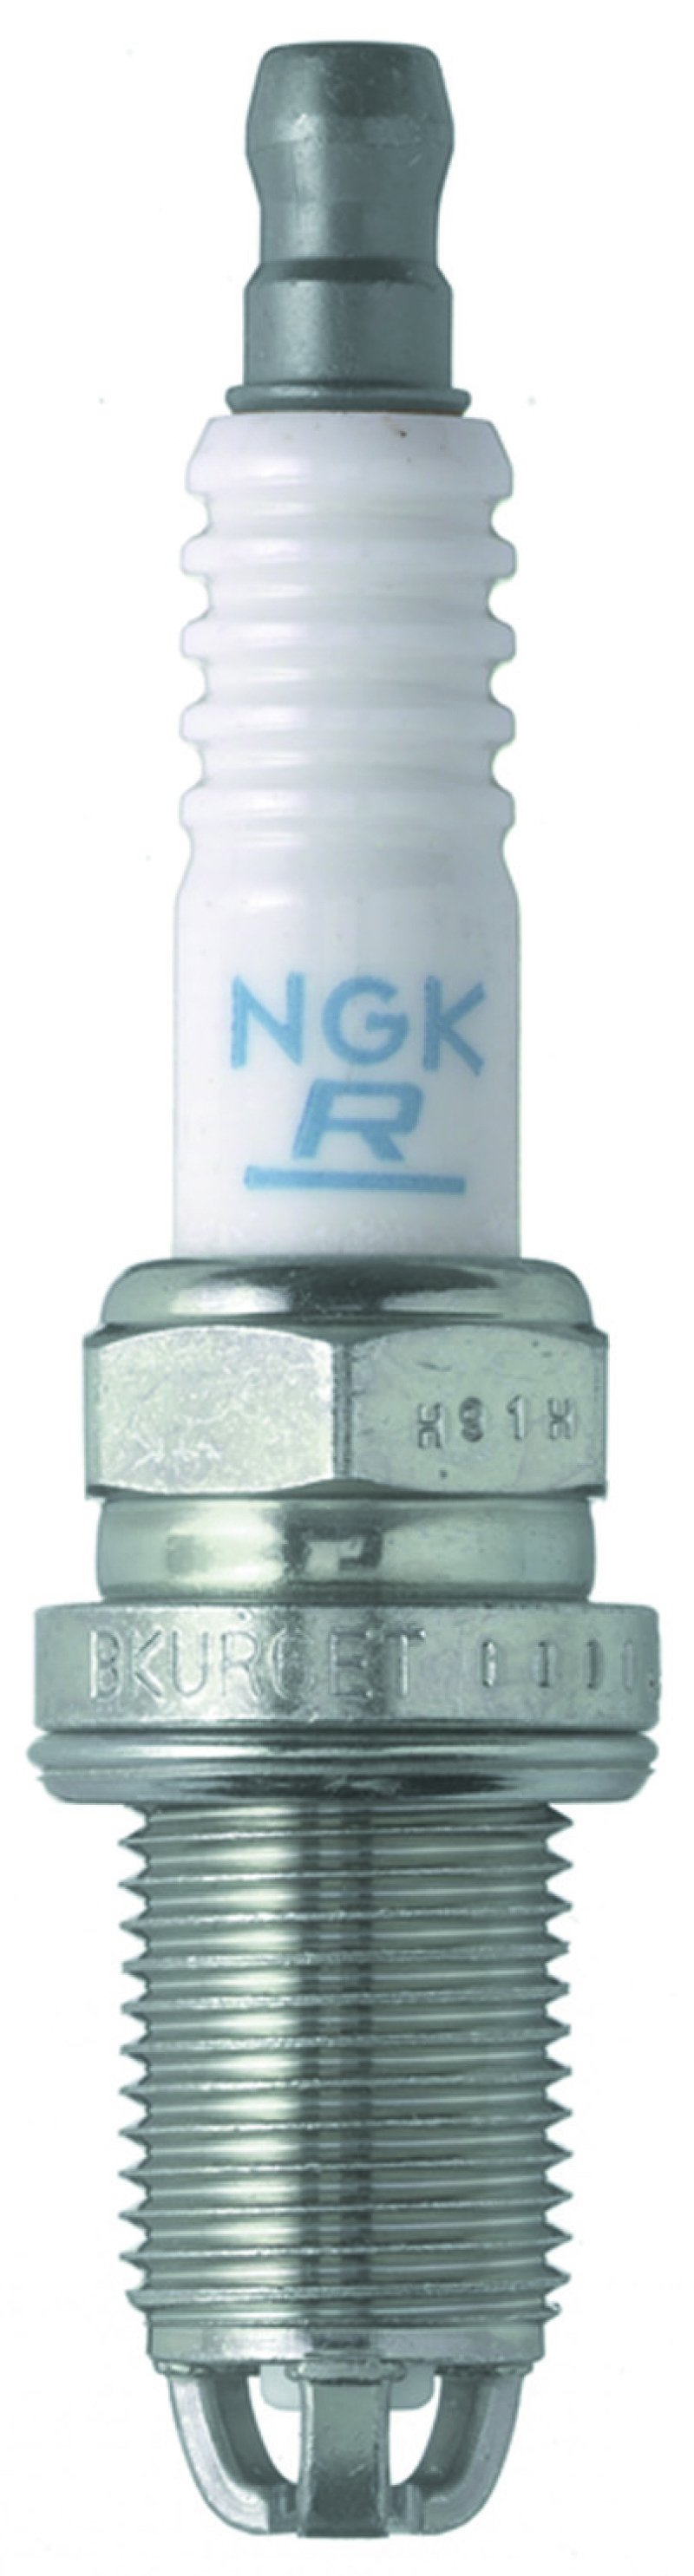 NGK Standard Spark Plug Box of 4 (BKUR6ETB) - 6992